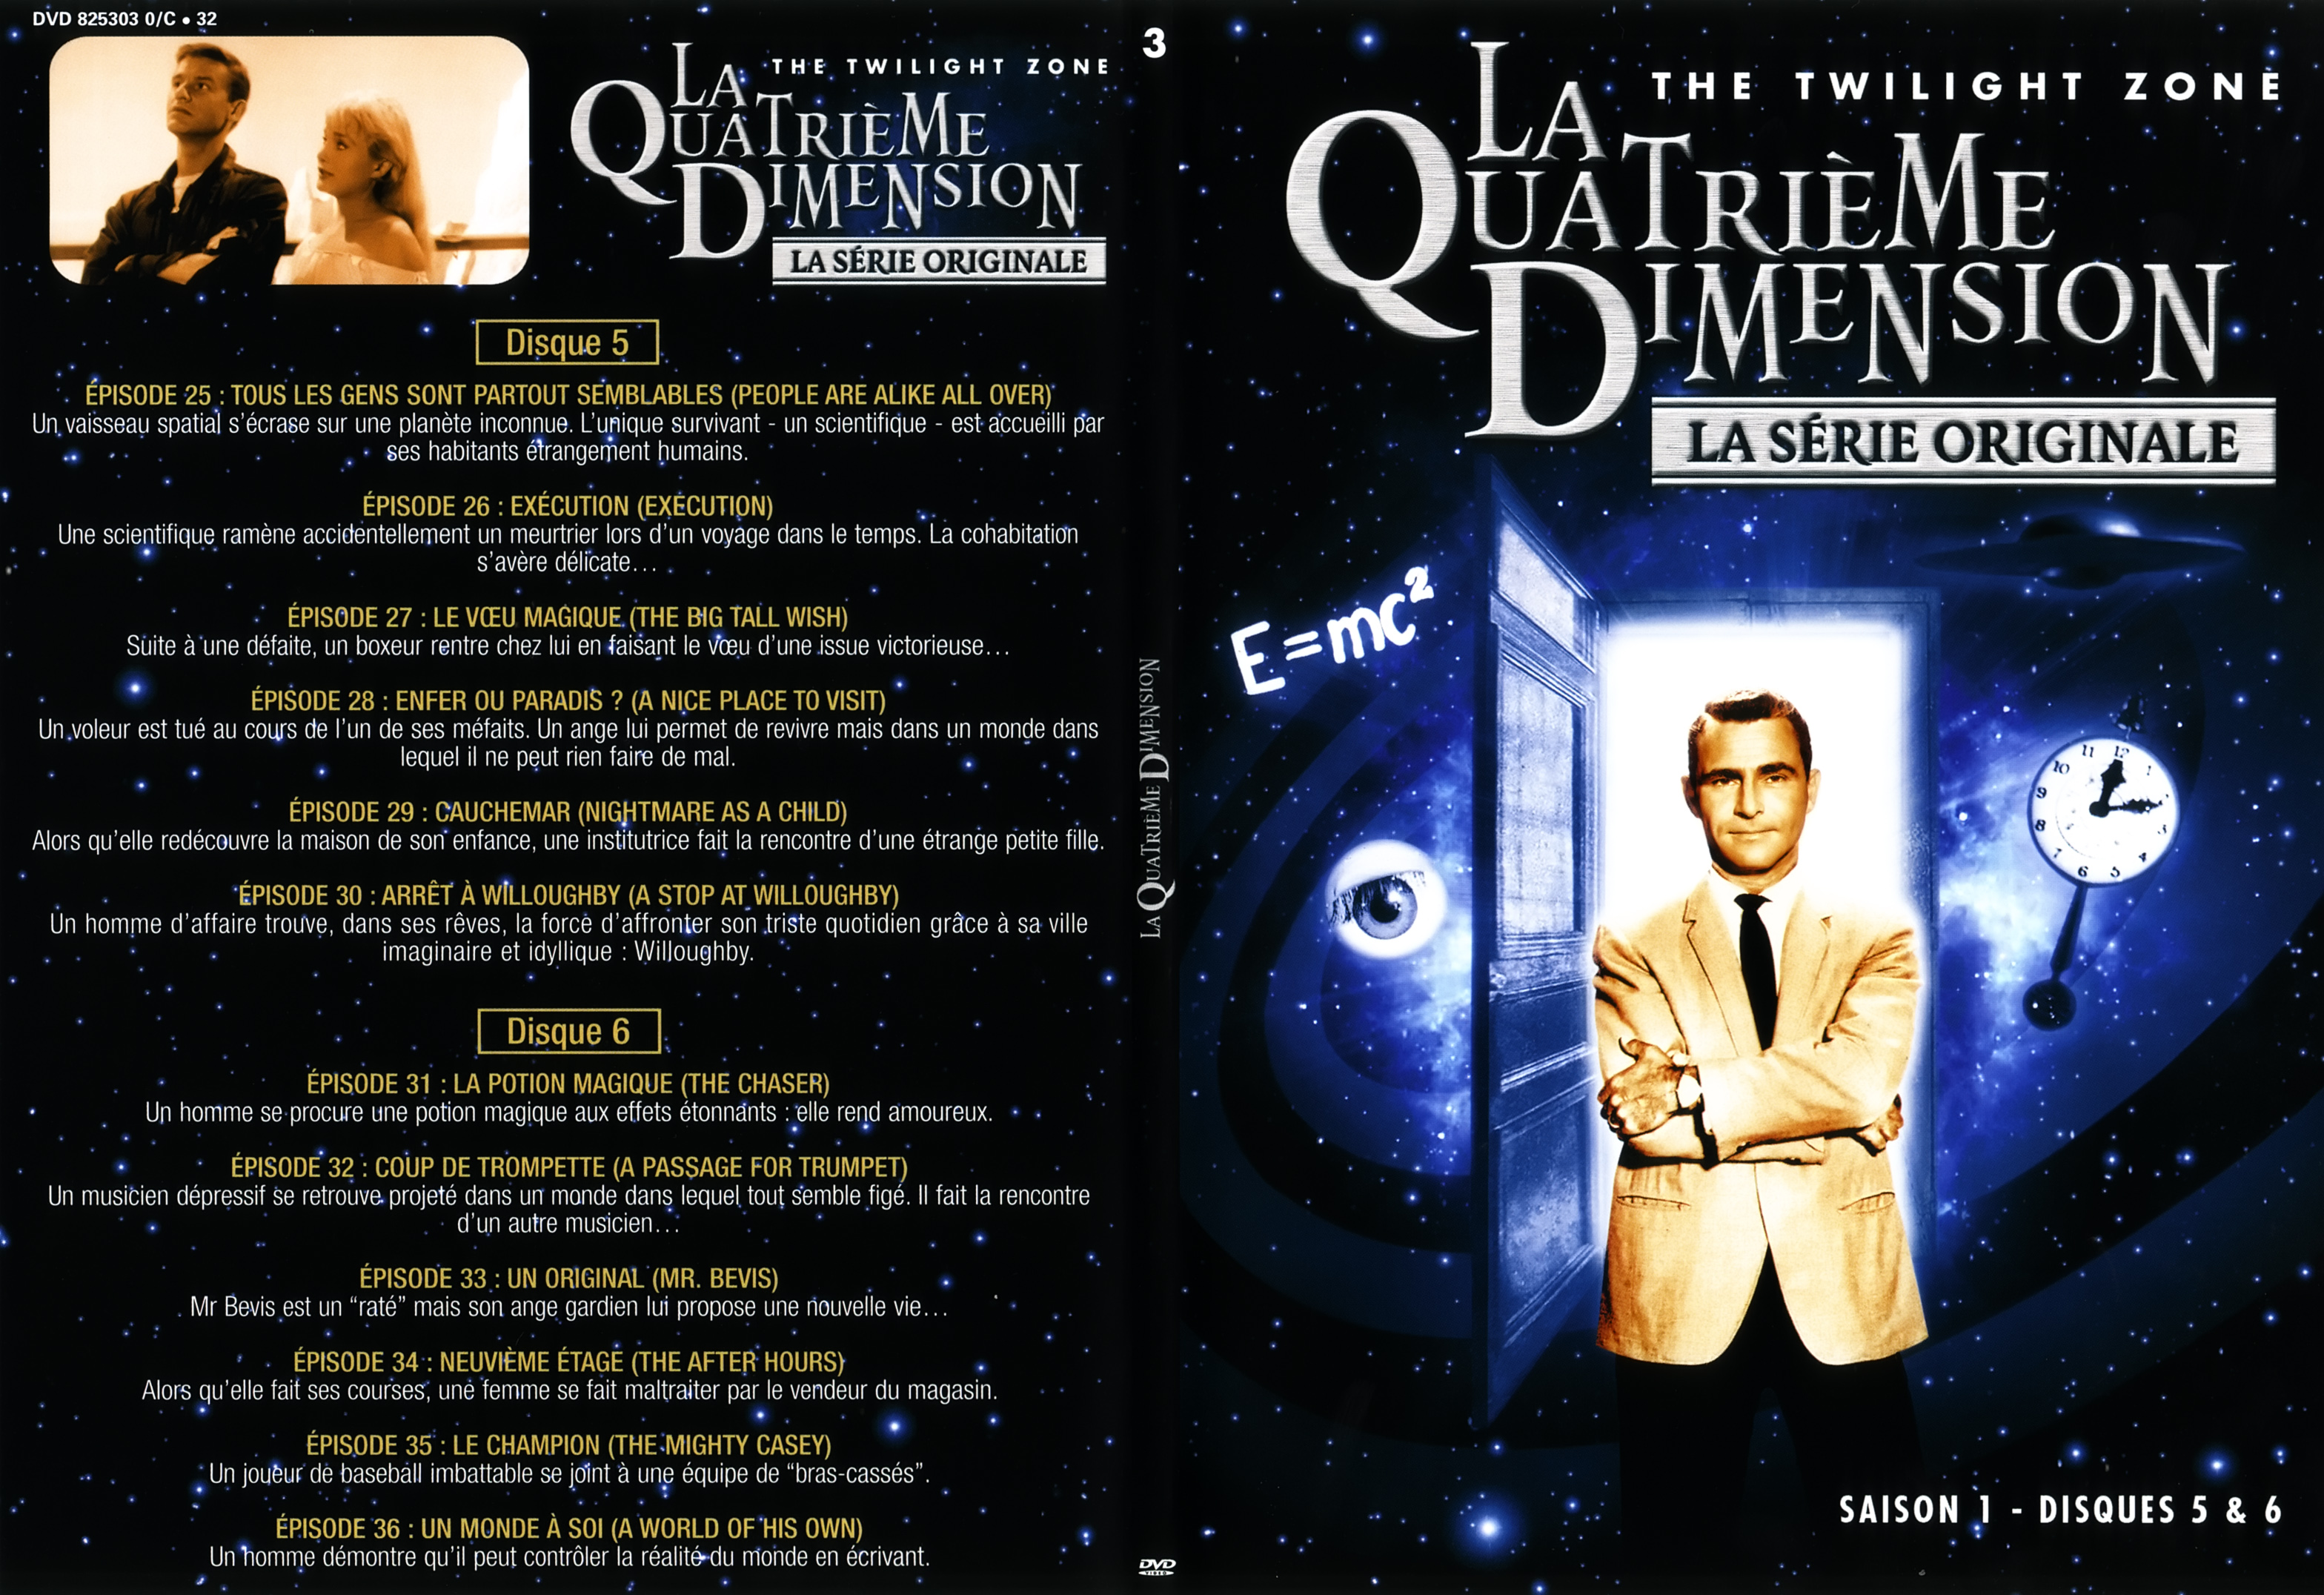 Jaquette DVD La quatrieme dimension saison 1 vol 3